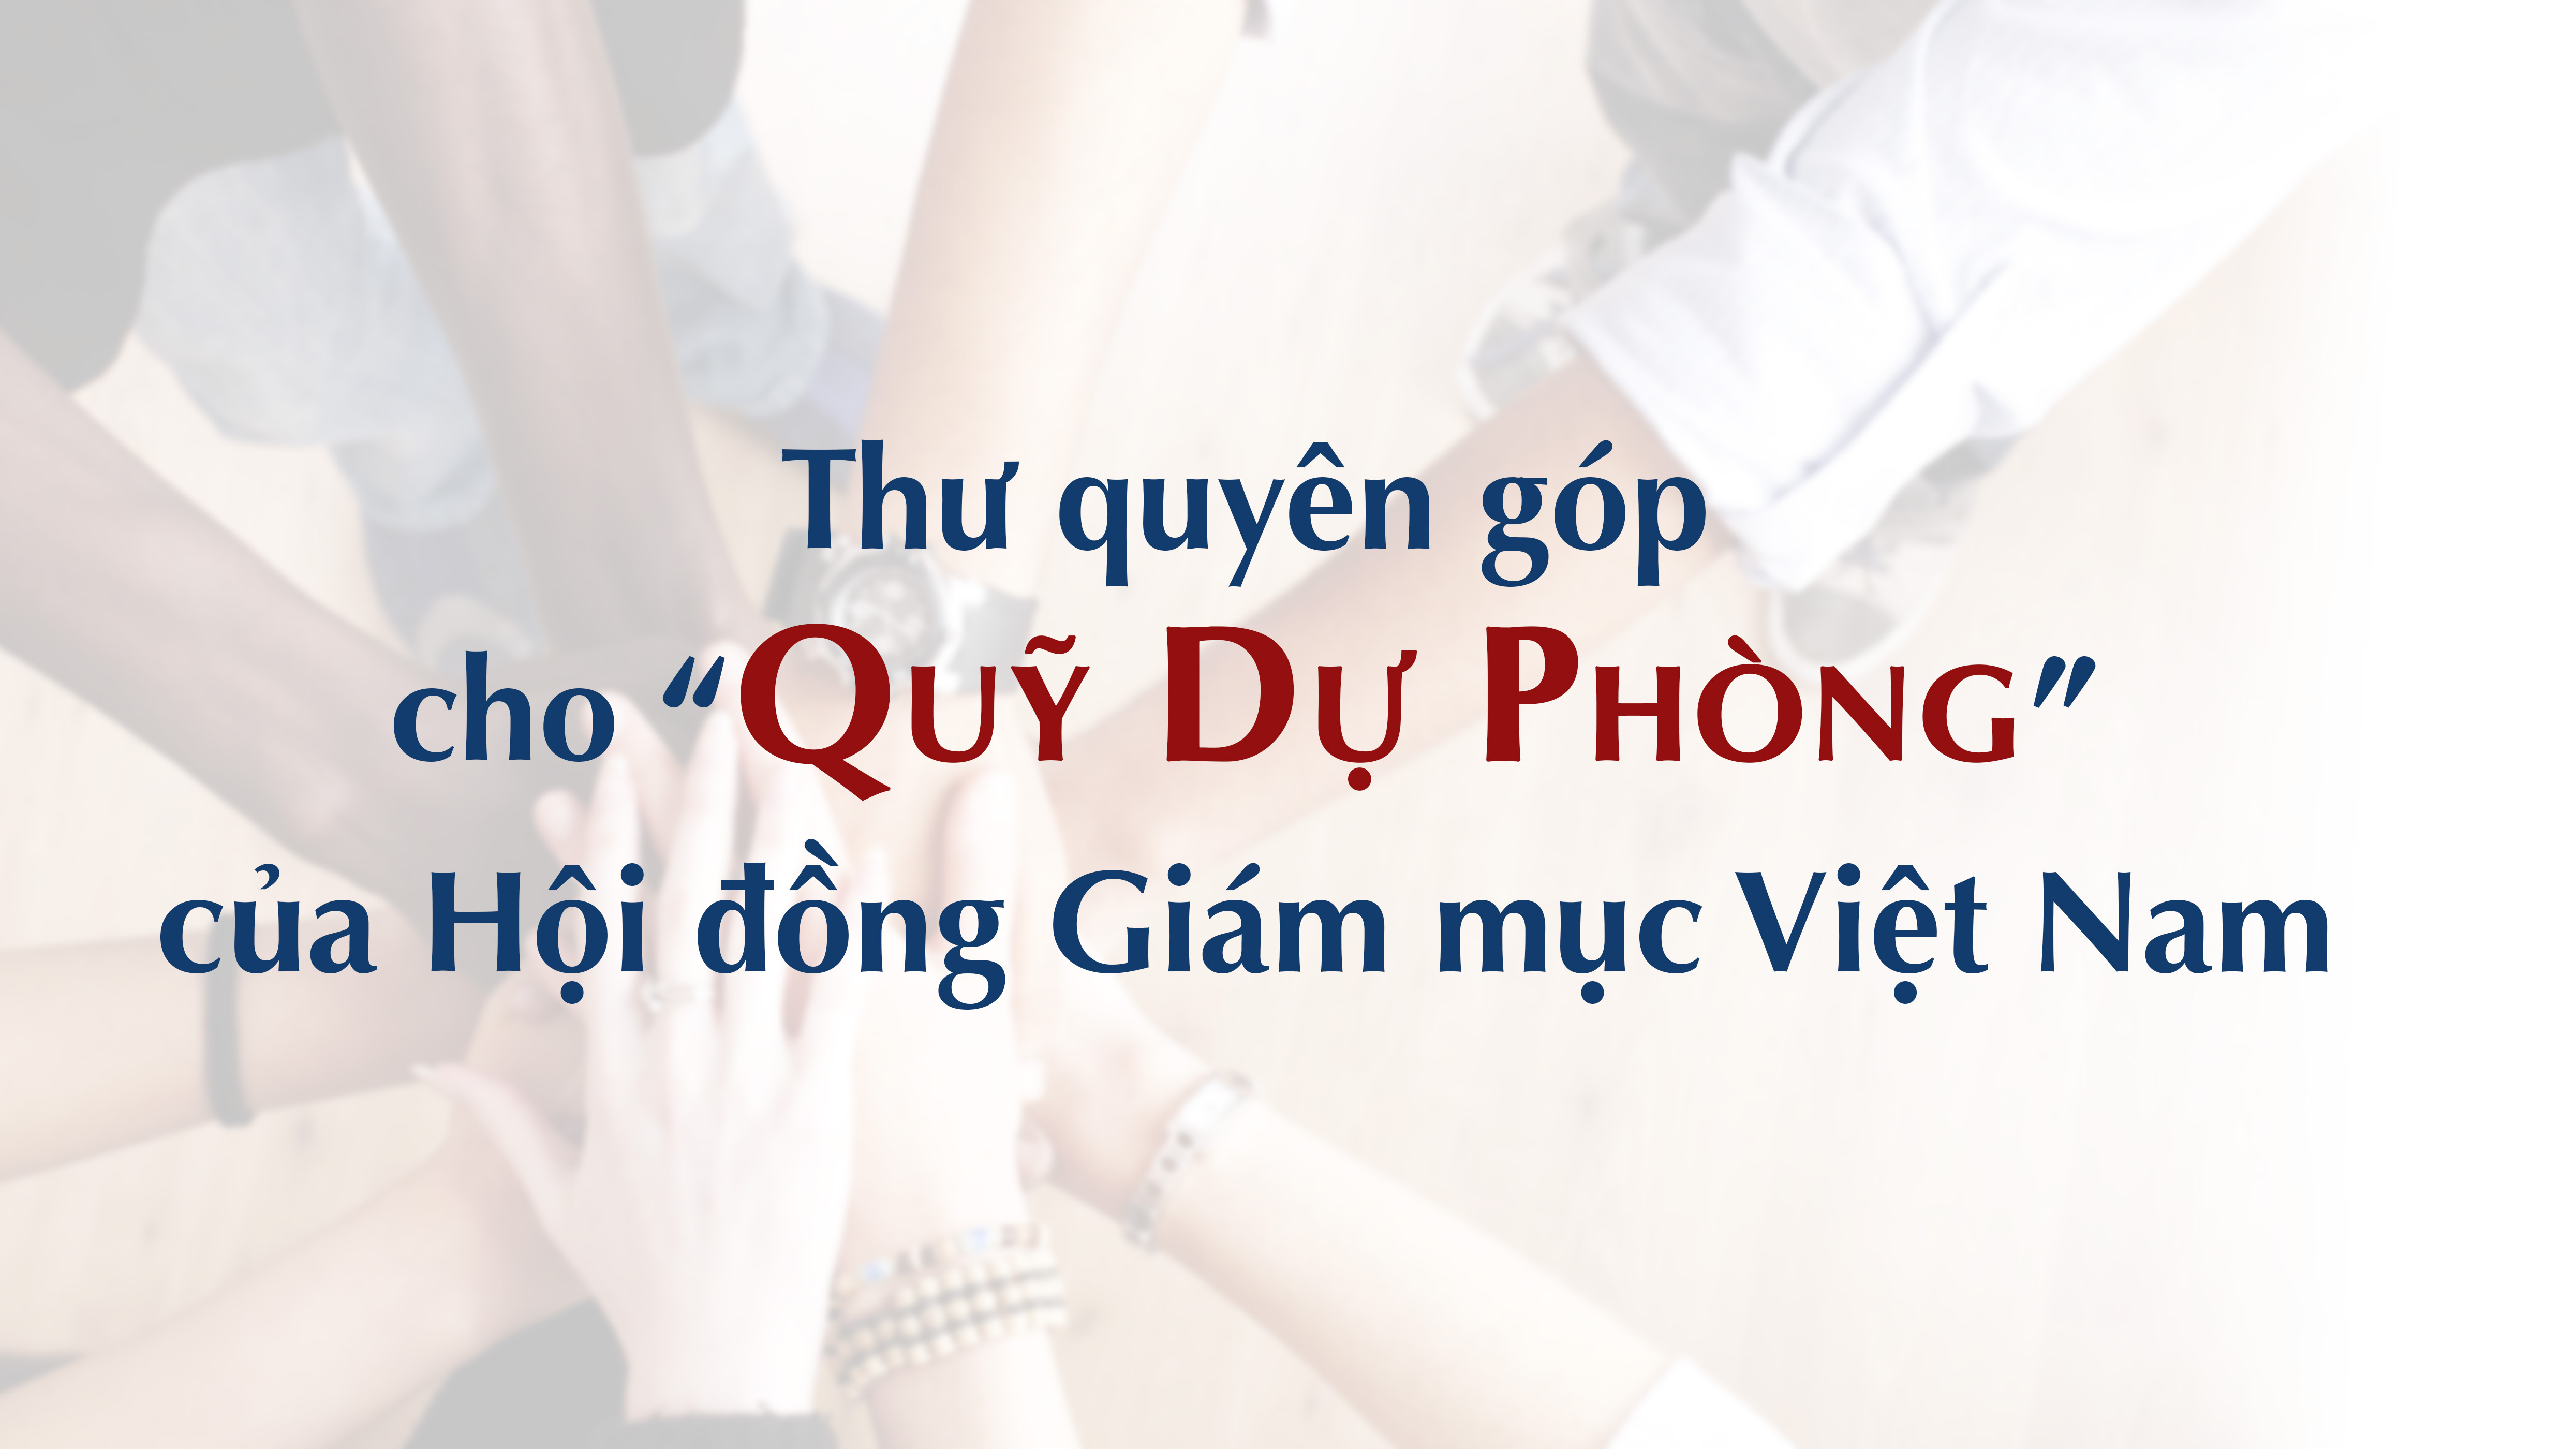 Thư quyên góp cho quỹ Dự phòng của Hội đồng Giám mục Việt Nam ngày 11-9-2020